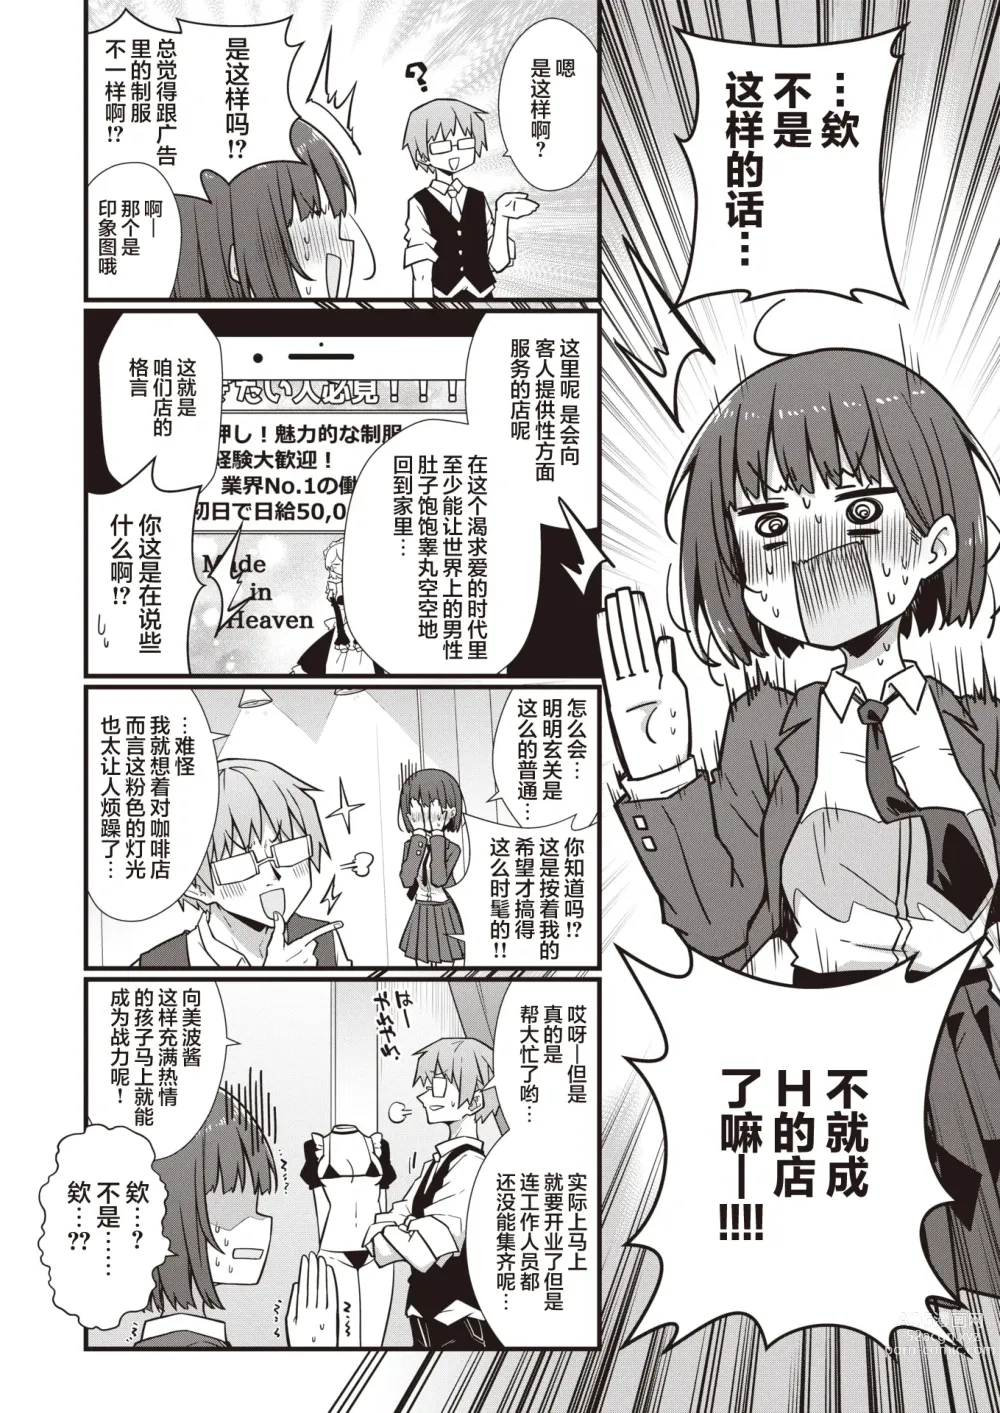 Page 5 of manga Hatarake! Minami-chan!